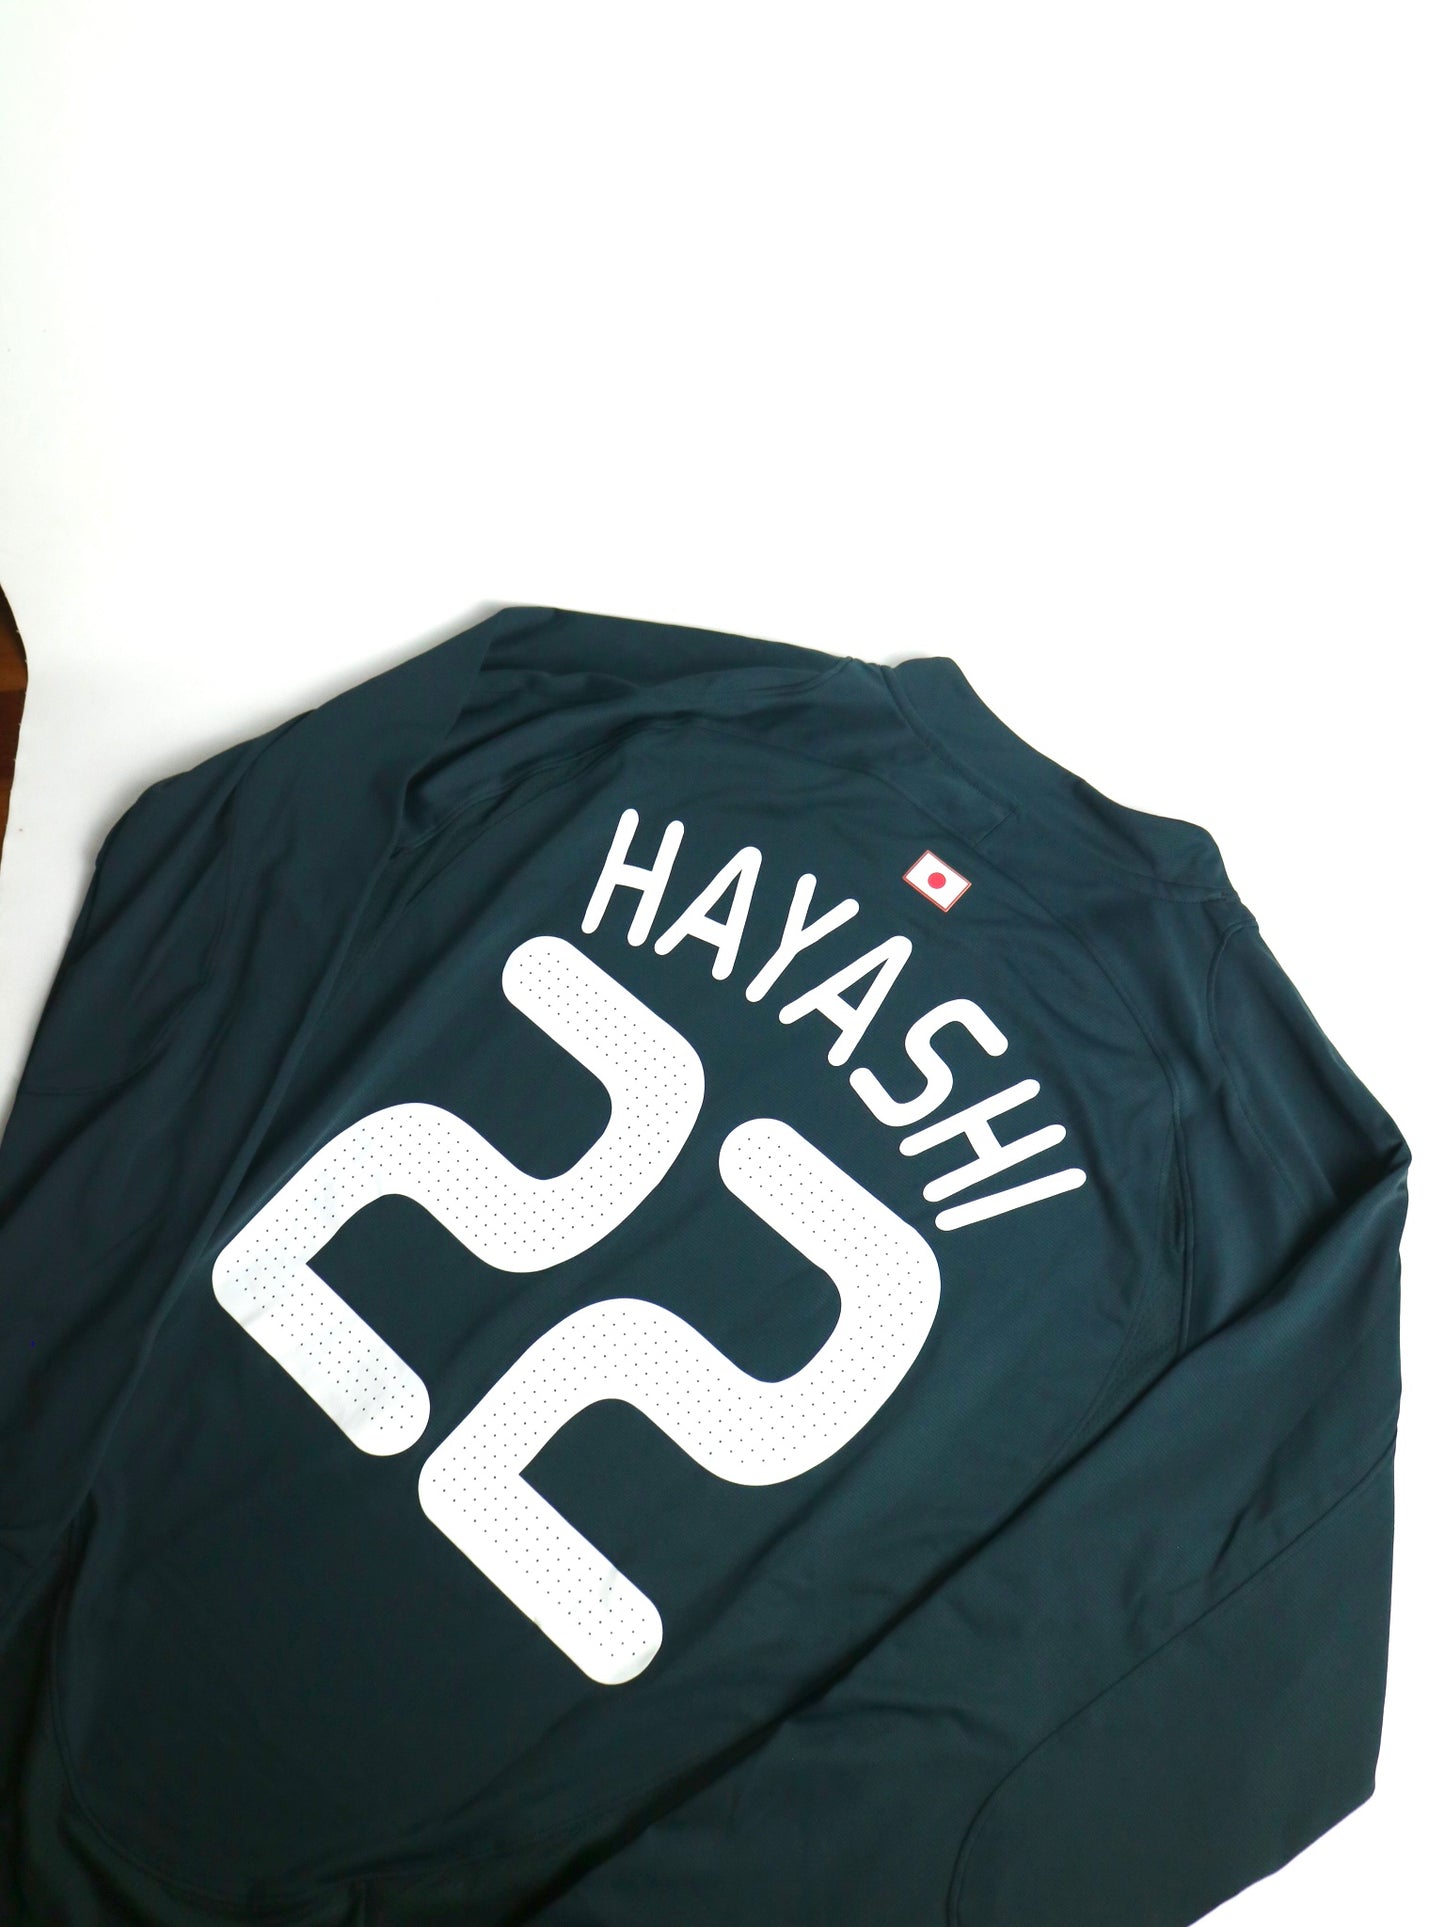 Japan #22 Hayashi Long Sleeve GK Kit 2008-2009 L